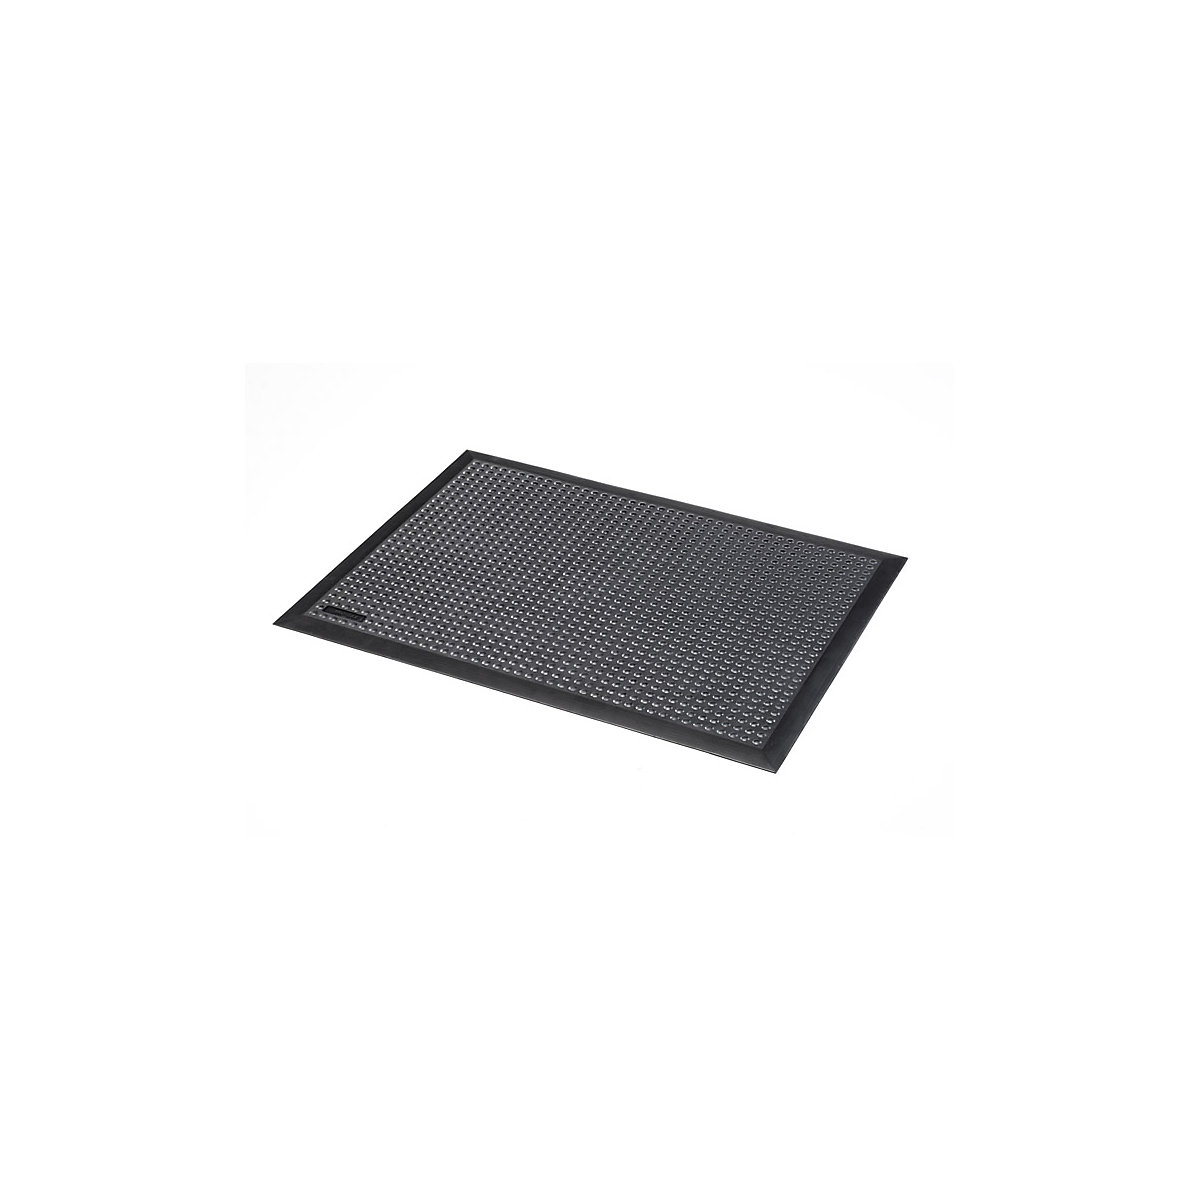 Skystep™ workstation matting – NOTRAX, black, LxWxH 1500 x 900 x 13 mm-4